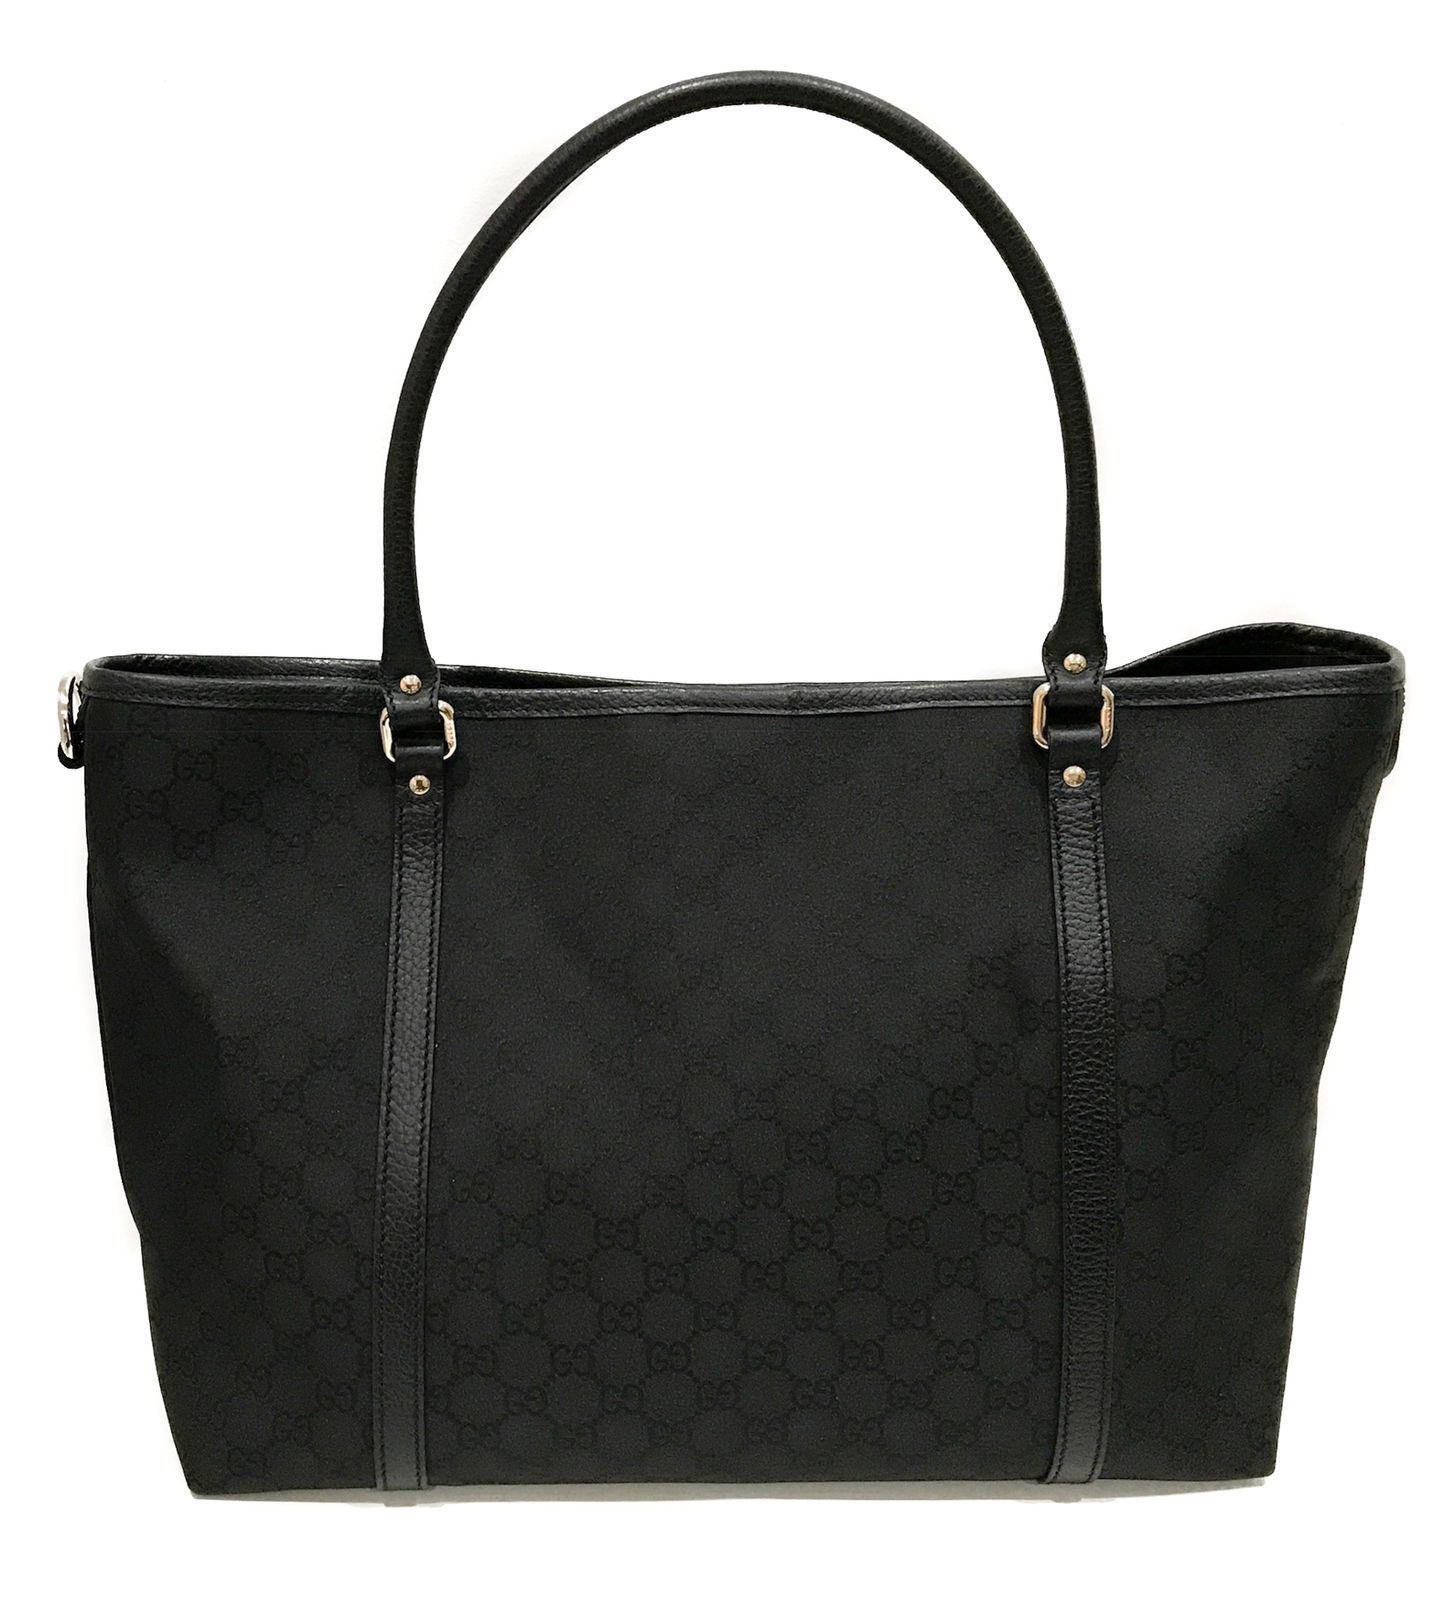 NWT GUCCI 265695 GG Guccissima Nylon Tote Bag, Black - Handbags & Purses